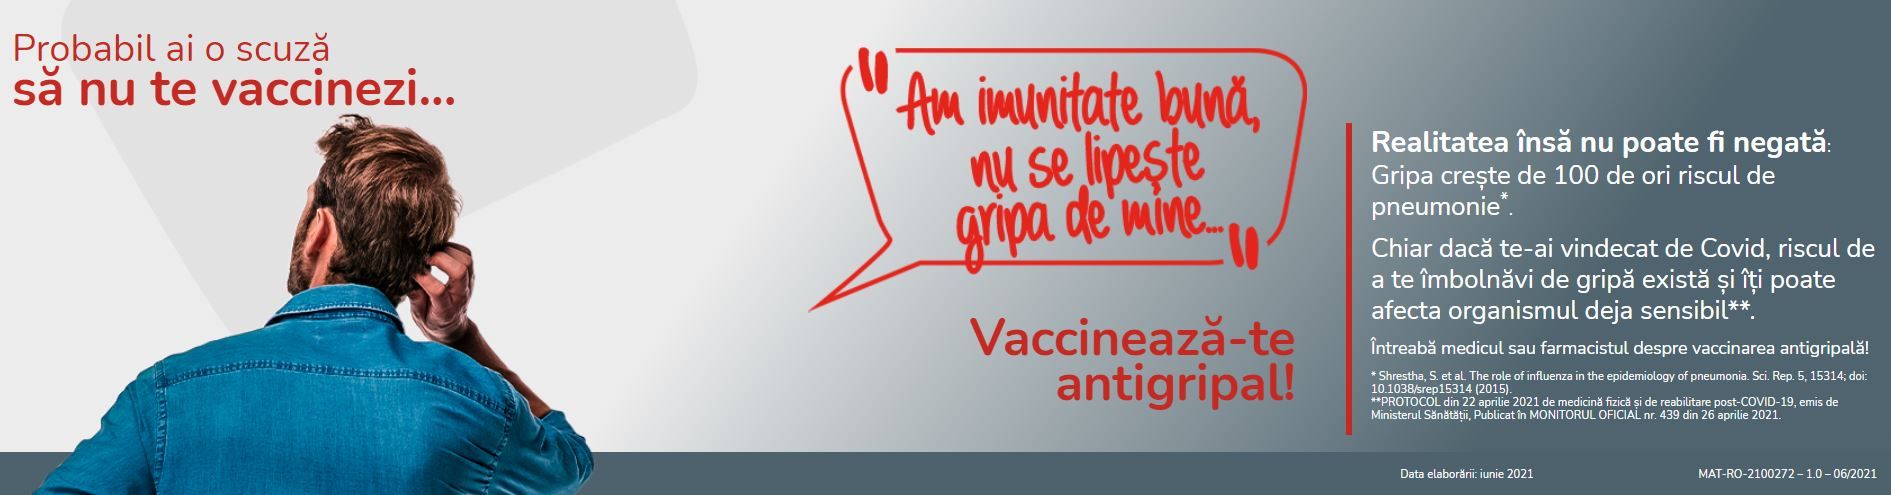 Campanie educațională dedicată vaccinării antigripale